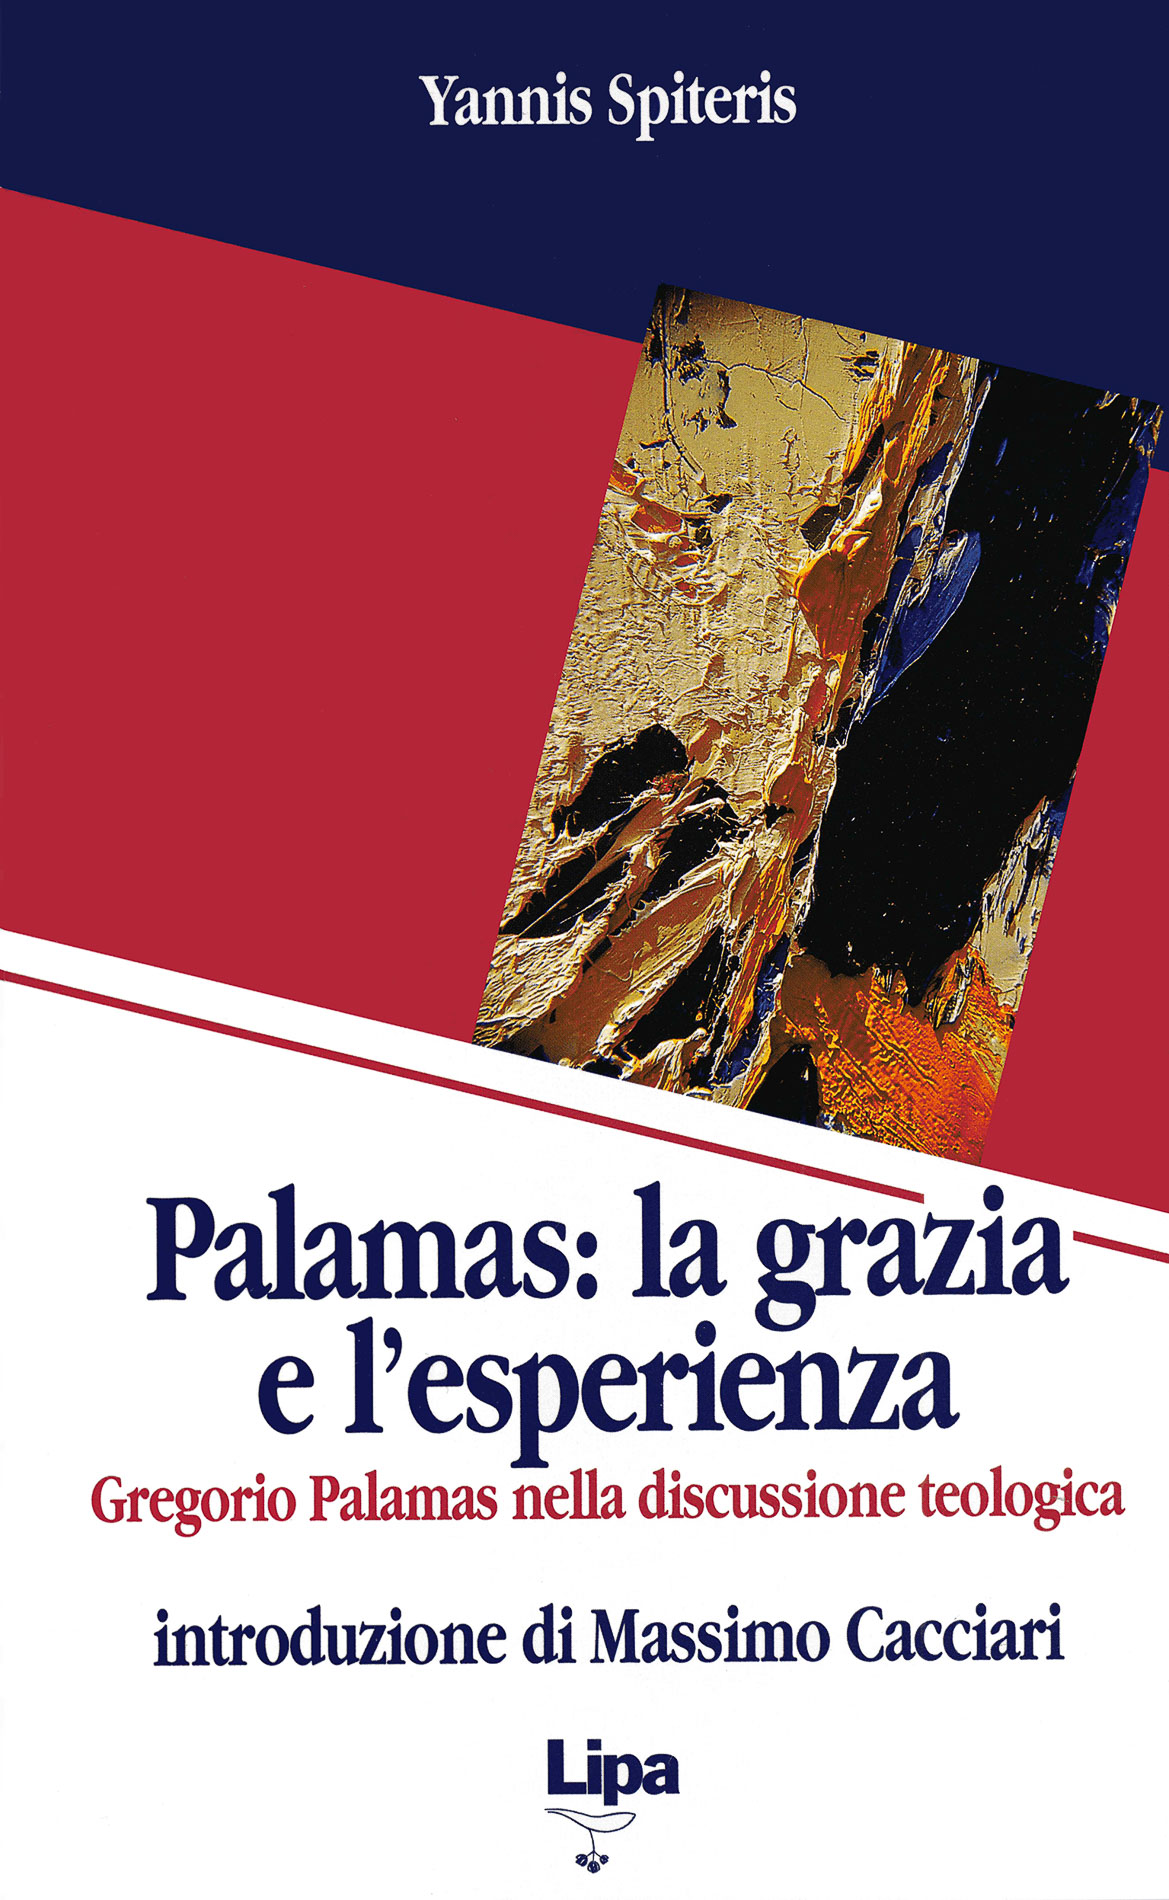 Copertina del libro "Palamas: la grazia e l'esperienza"